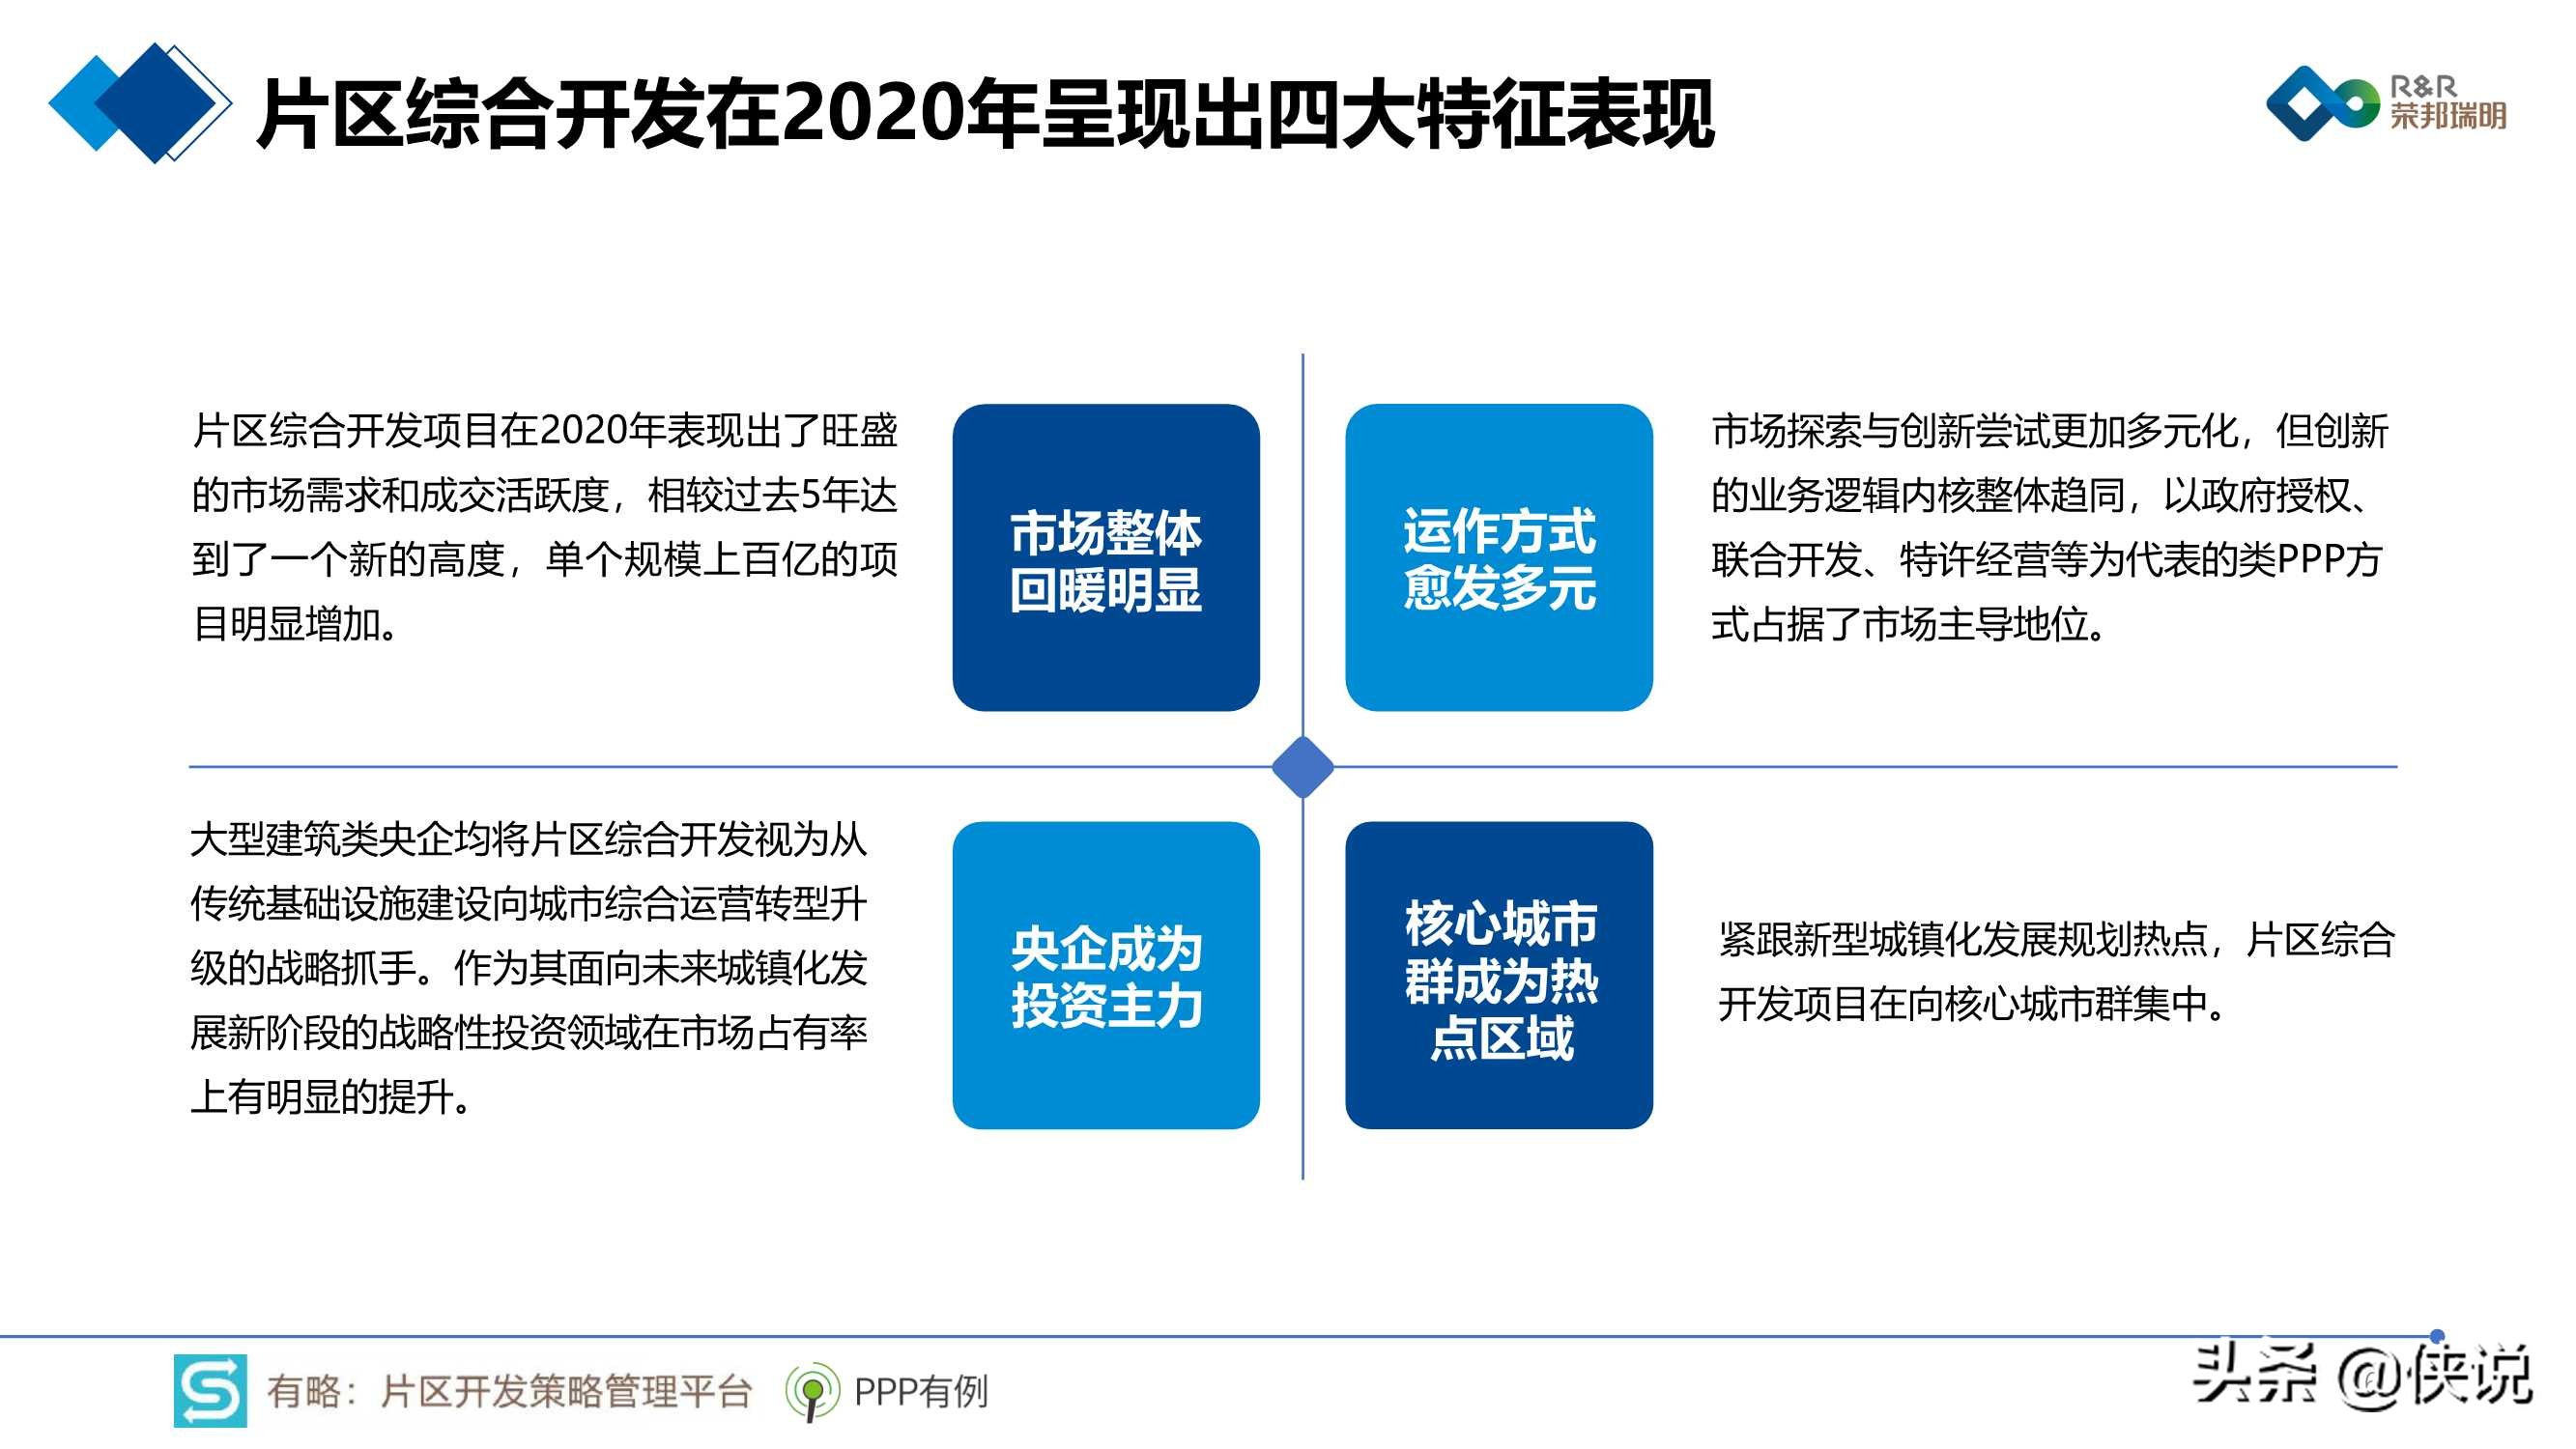 2020年片区综合开发分析报告暨2021年投资展望